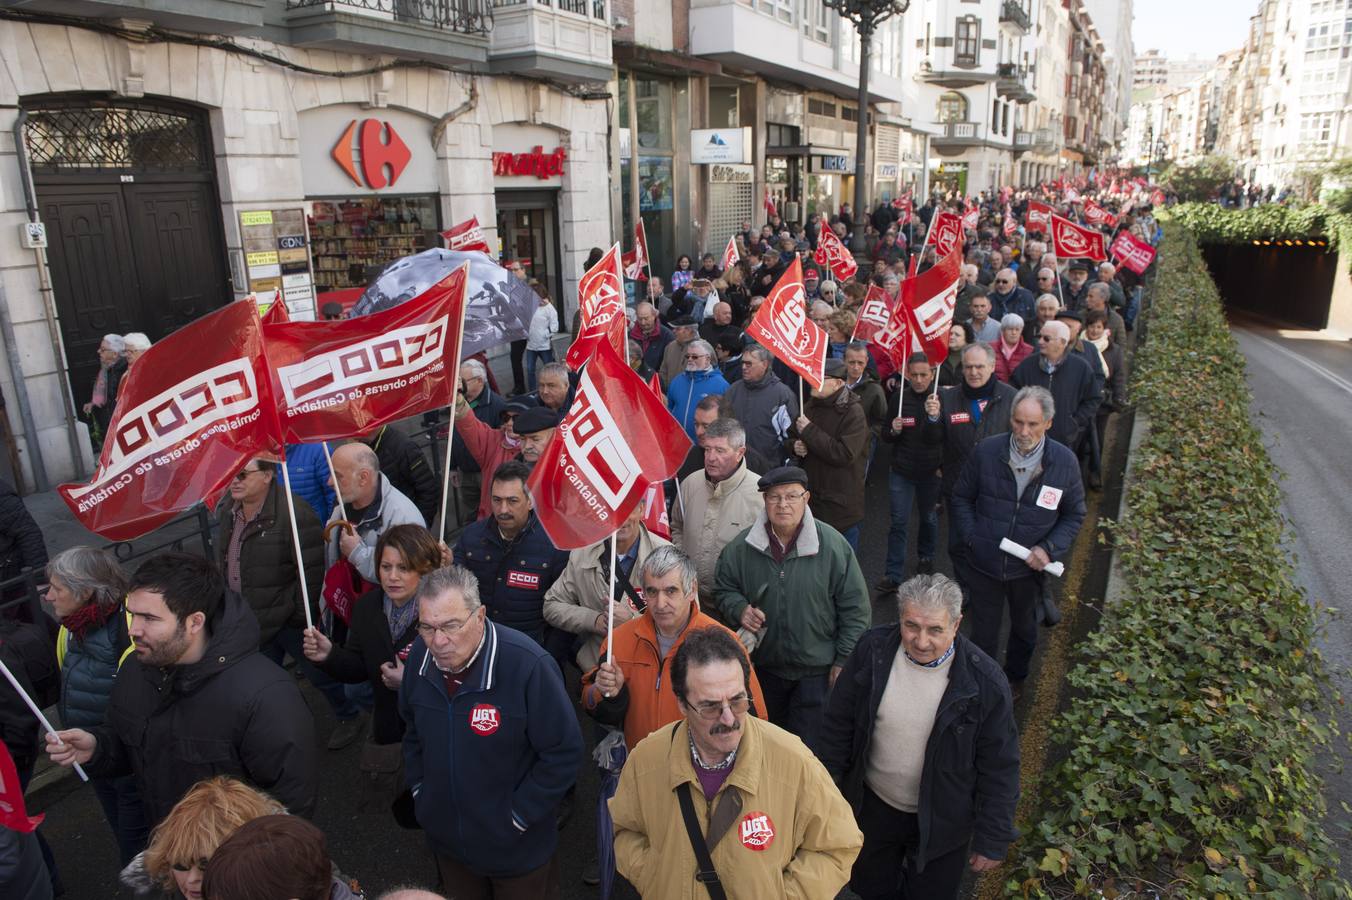 Los sindicatos cifran en 25.000 personas los asistentes a la protesta